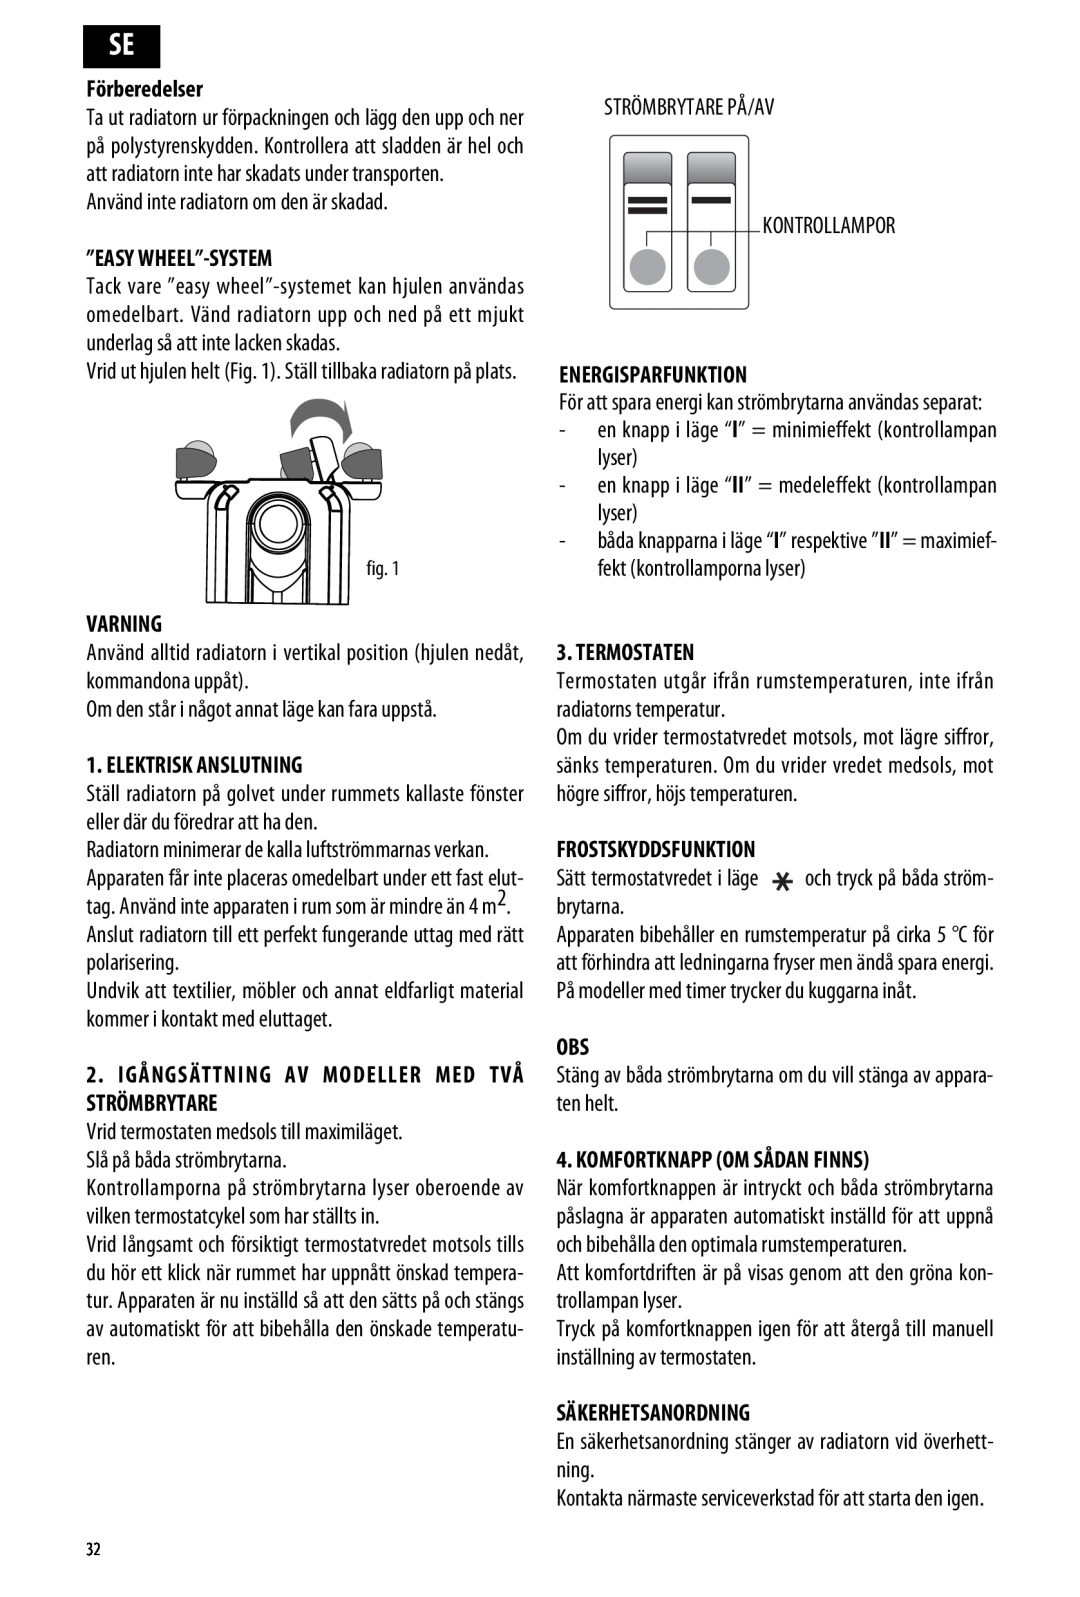 DeLonghi ME 10 manual Förberedelser, ”Easy Wheel”-System, Varning, Elektrisk Anslutning, Energisparfunktion, Termostaten 